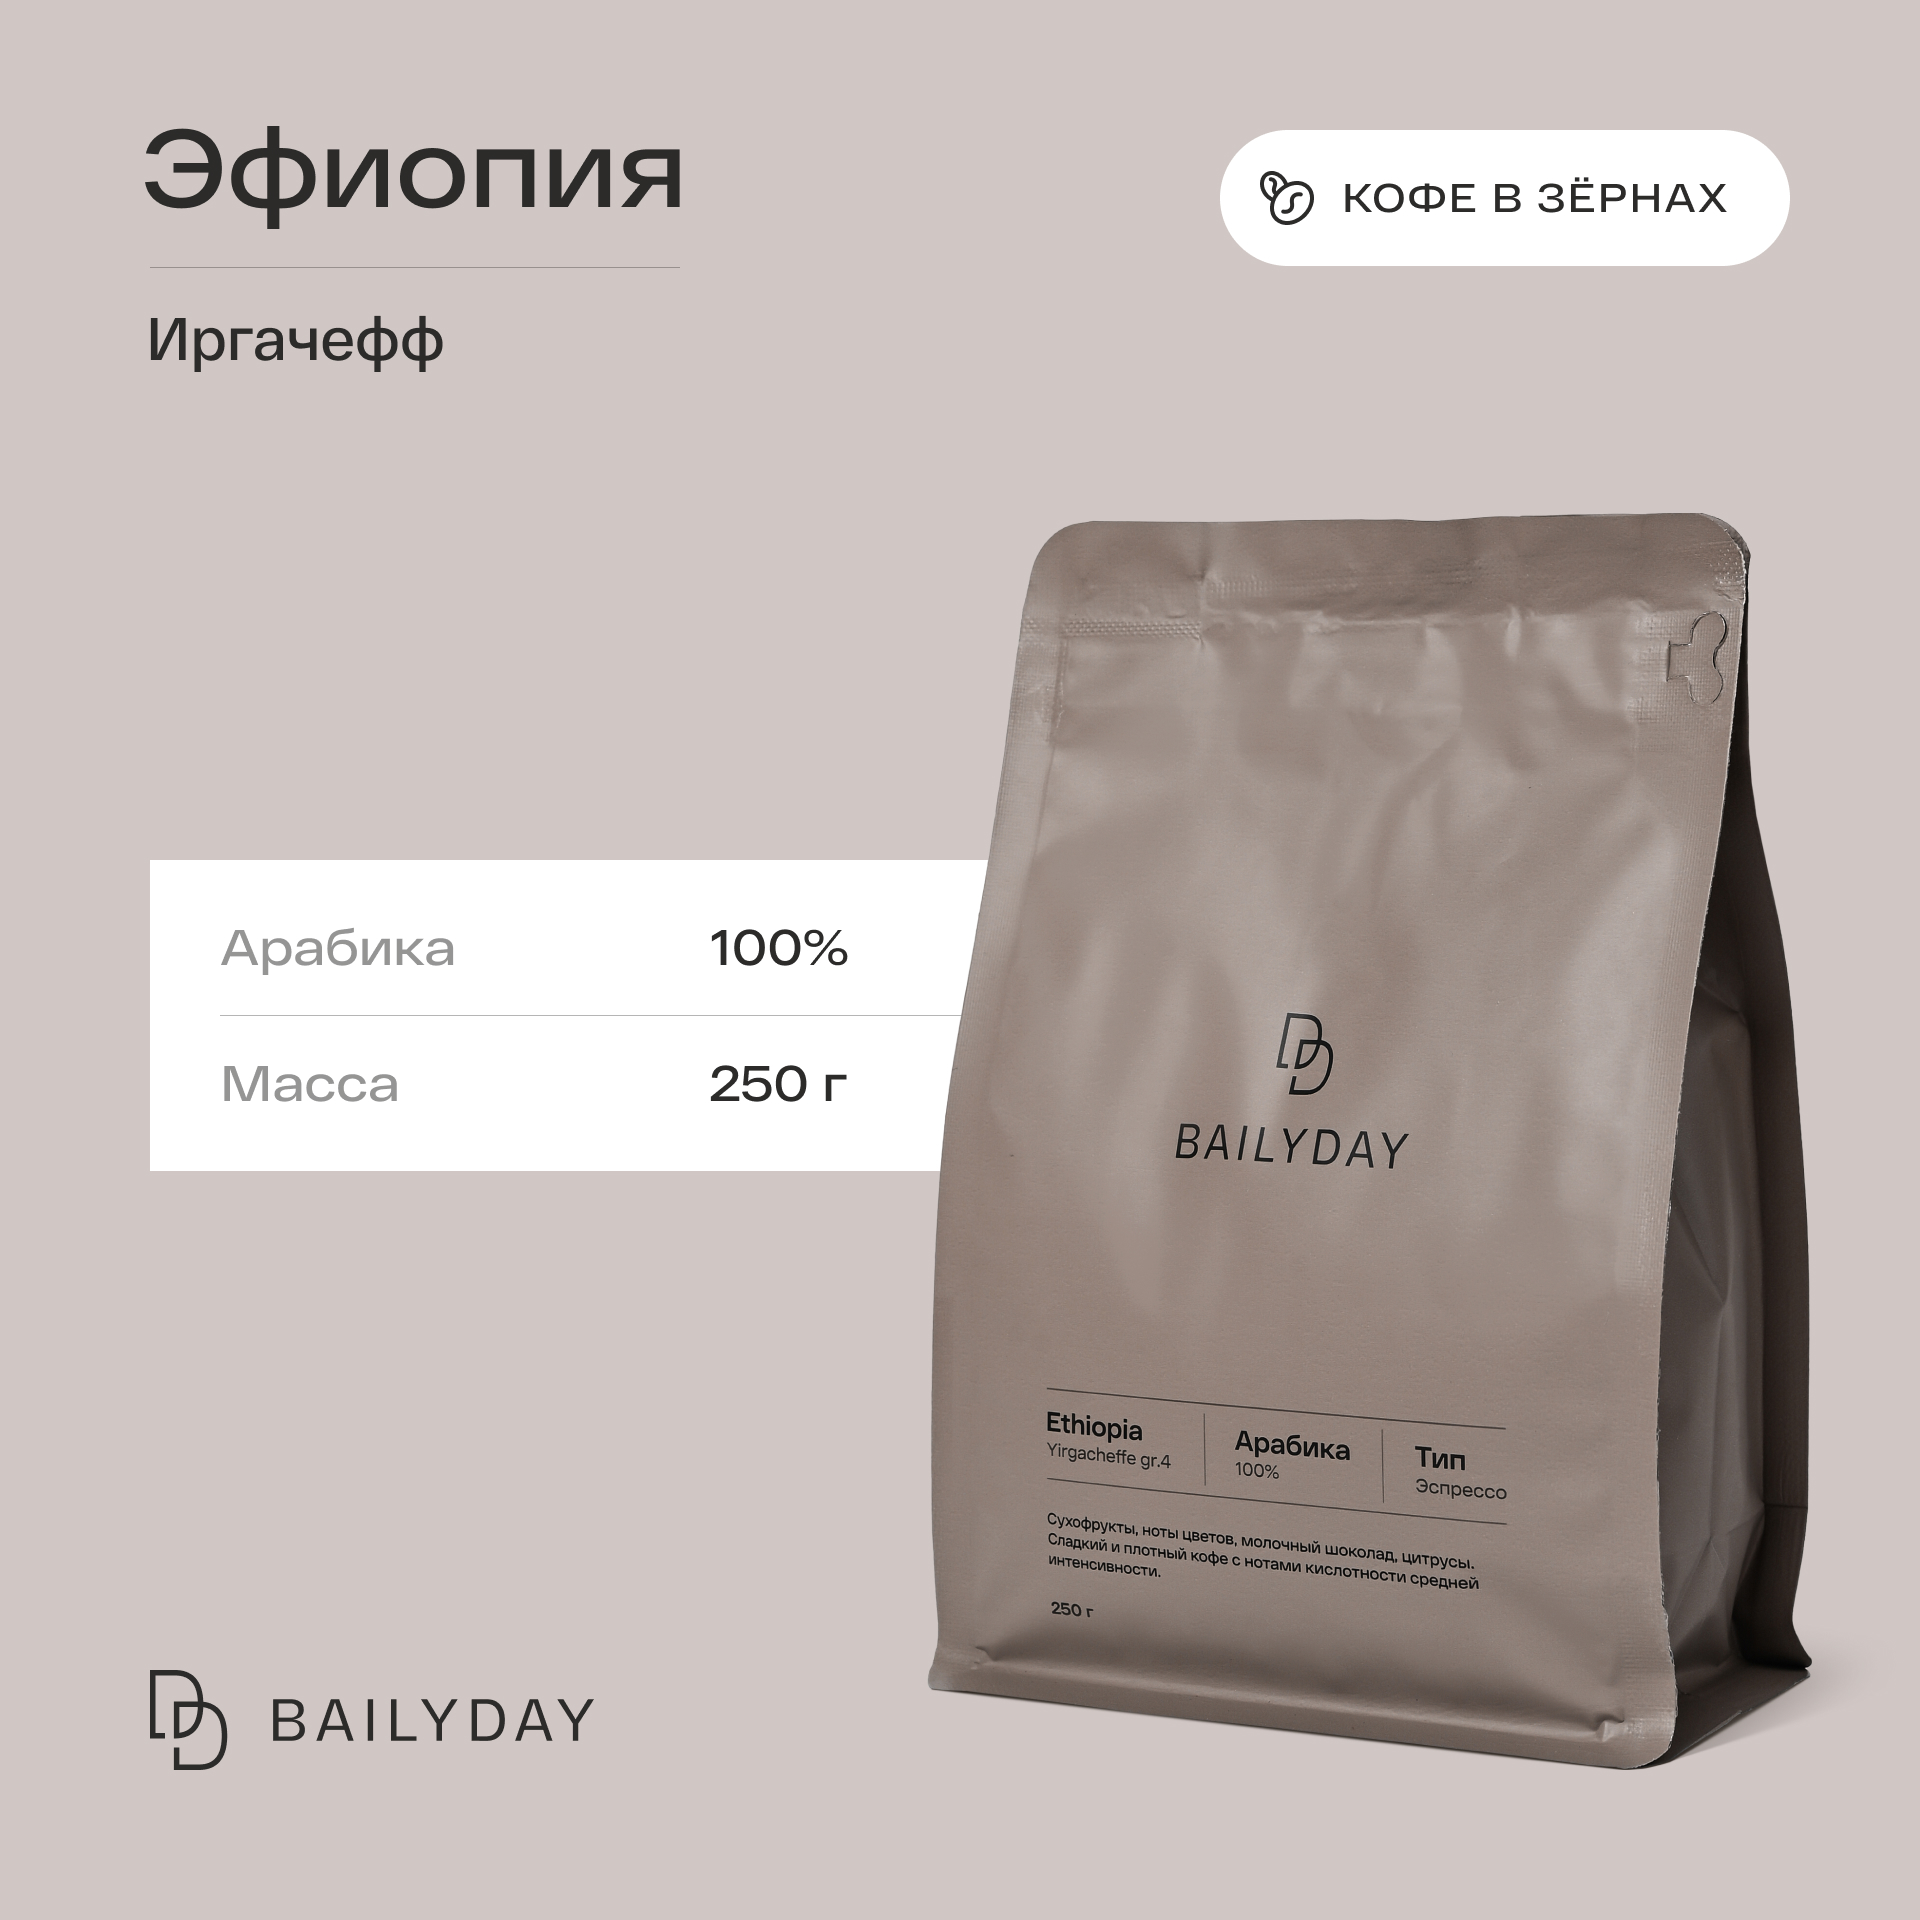 Кофе в зернах Bailyday Эфиопия Иргачефф Bailyday 100% арабика обжарка под эспрессо, 250 г